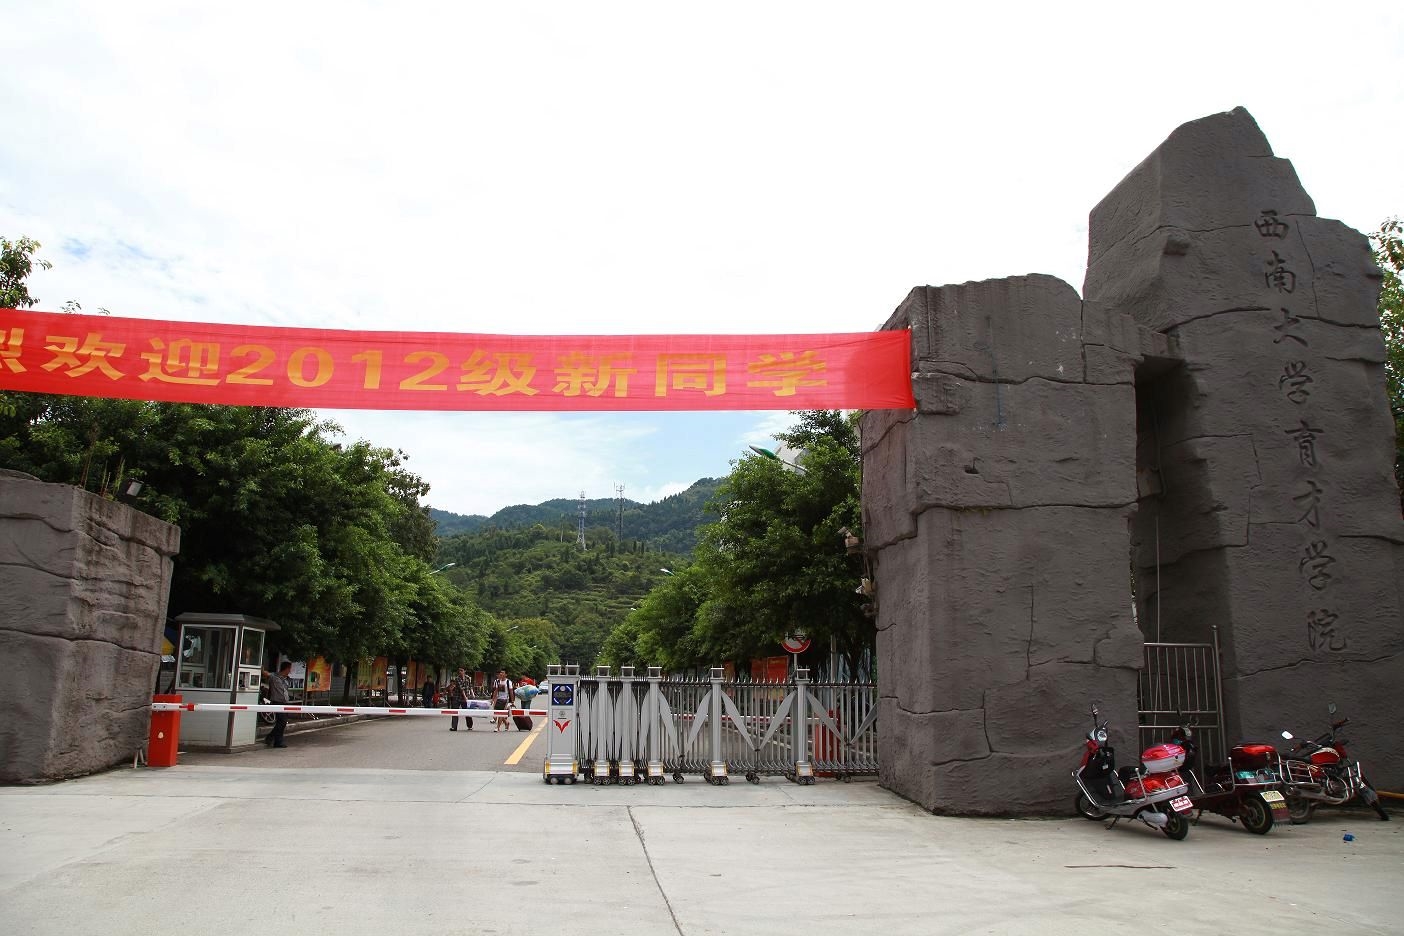 三十个三本院校第19名,重庆人文科技学院往年录取分数,可供参考